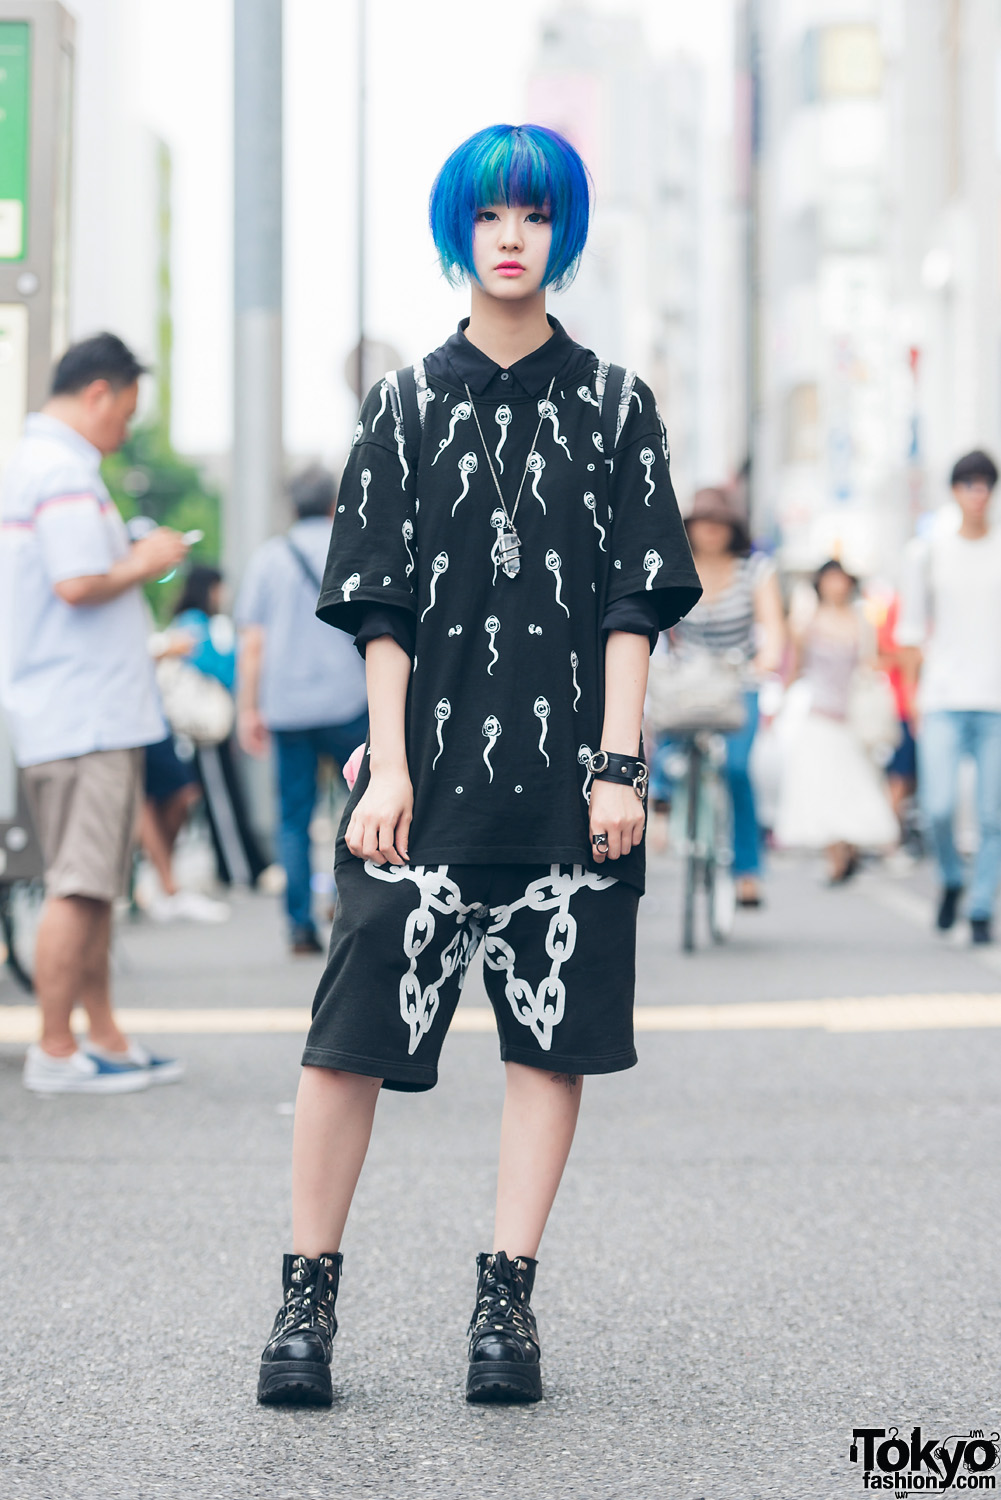 Blue-Haired Harajuku Girl in Far Star Fashion, Kill Star Bag & Yosuke USA Boots